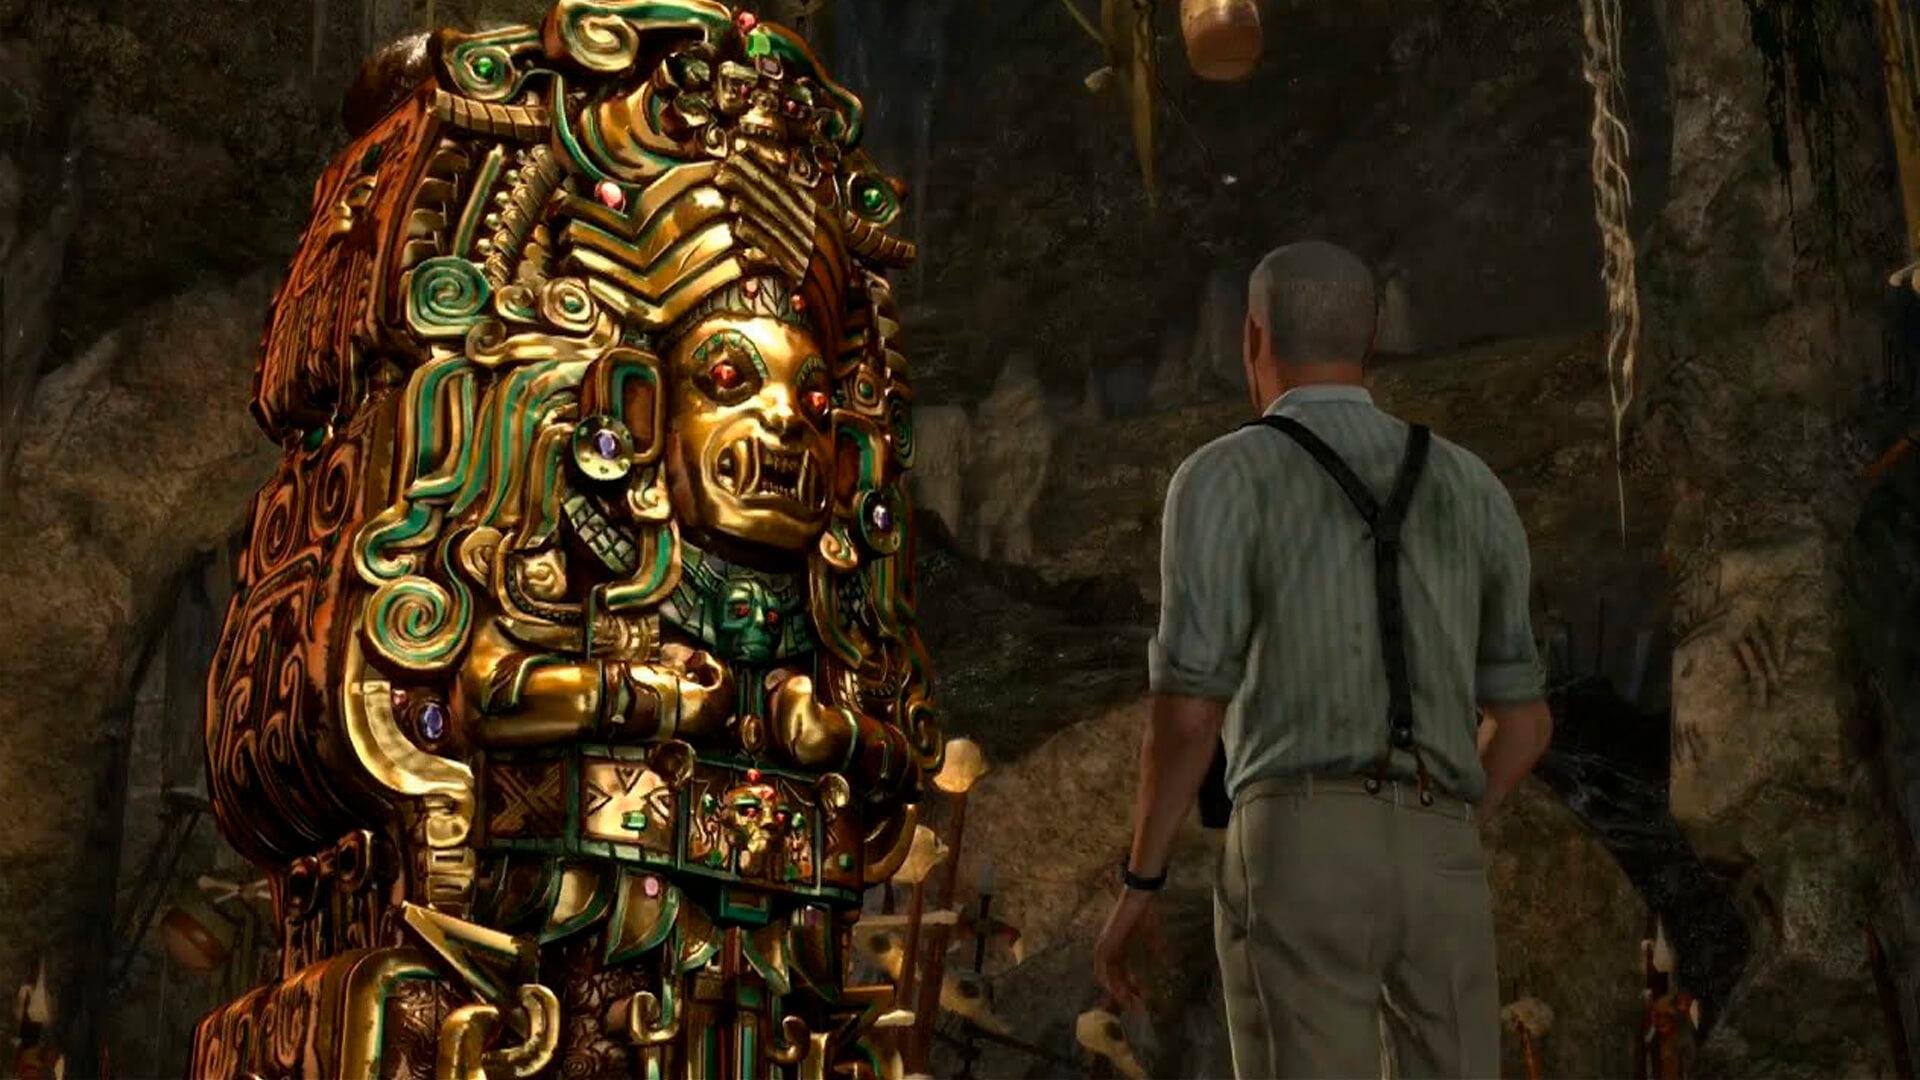 Uncharted: conheça locais míticos usados nos games da franquia